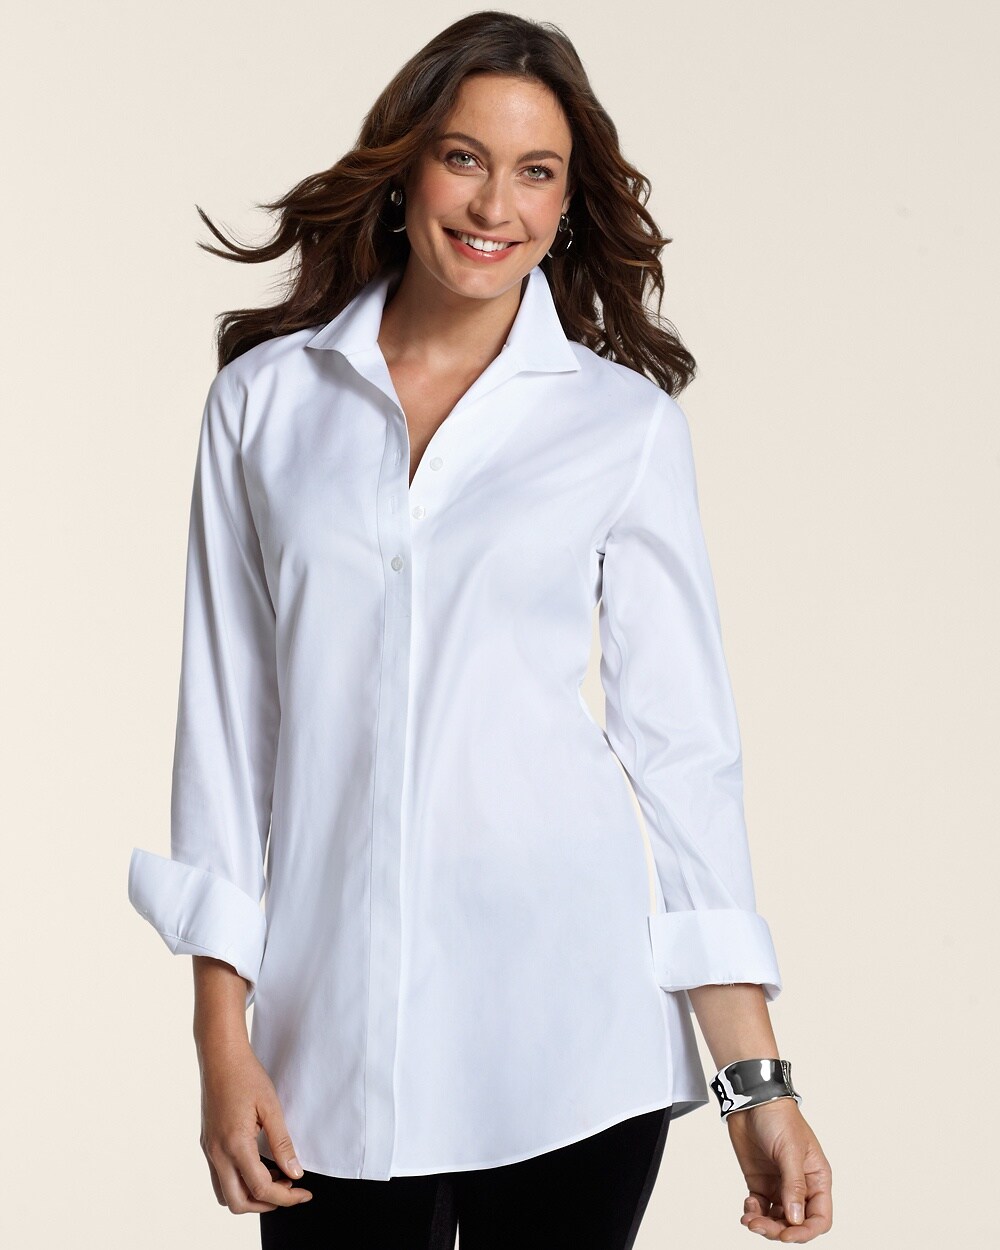 Chico white blouses long sleeve women dress